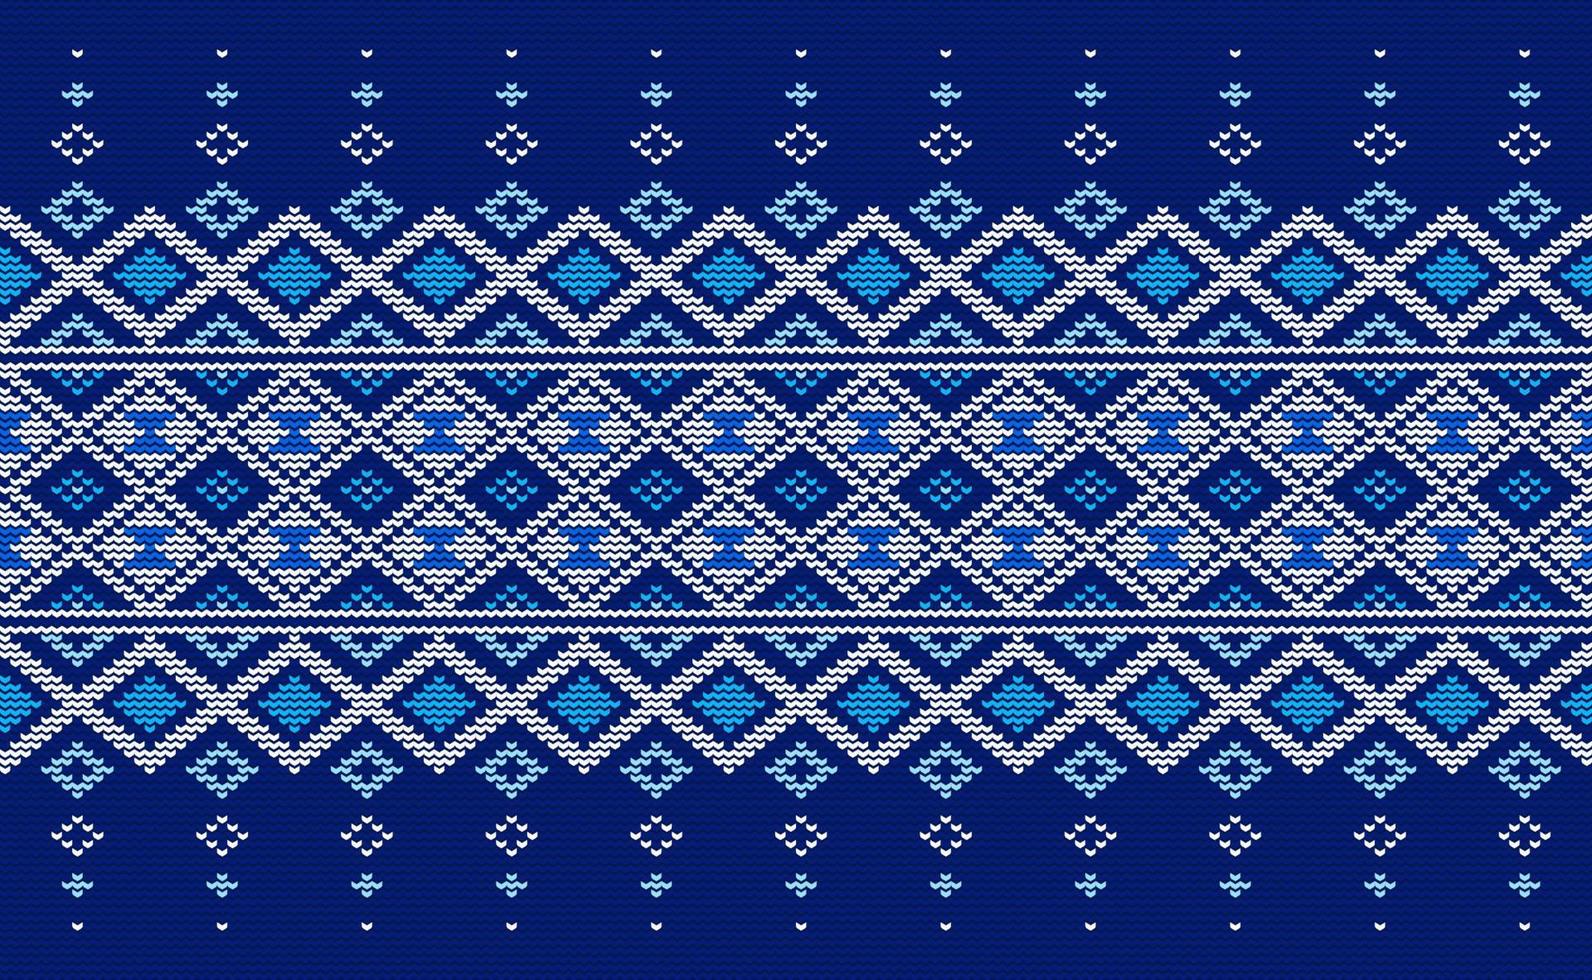 gebreid etnisch patroon, vector borduurwerk plein achtergrond, kruis steek traditioneel Afrikaanse stijl, wit en blauw patroon garen abstract, ontwerp voor textiel, kleding stof, tapijt, grafisch illustratie